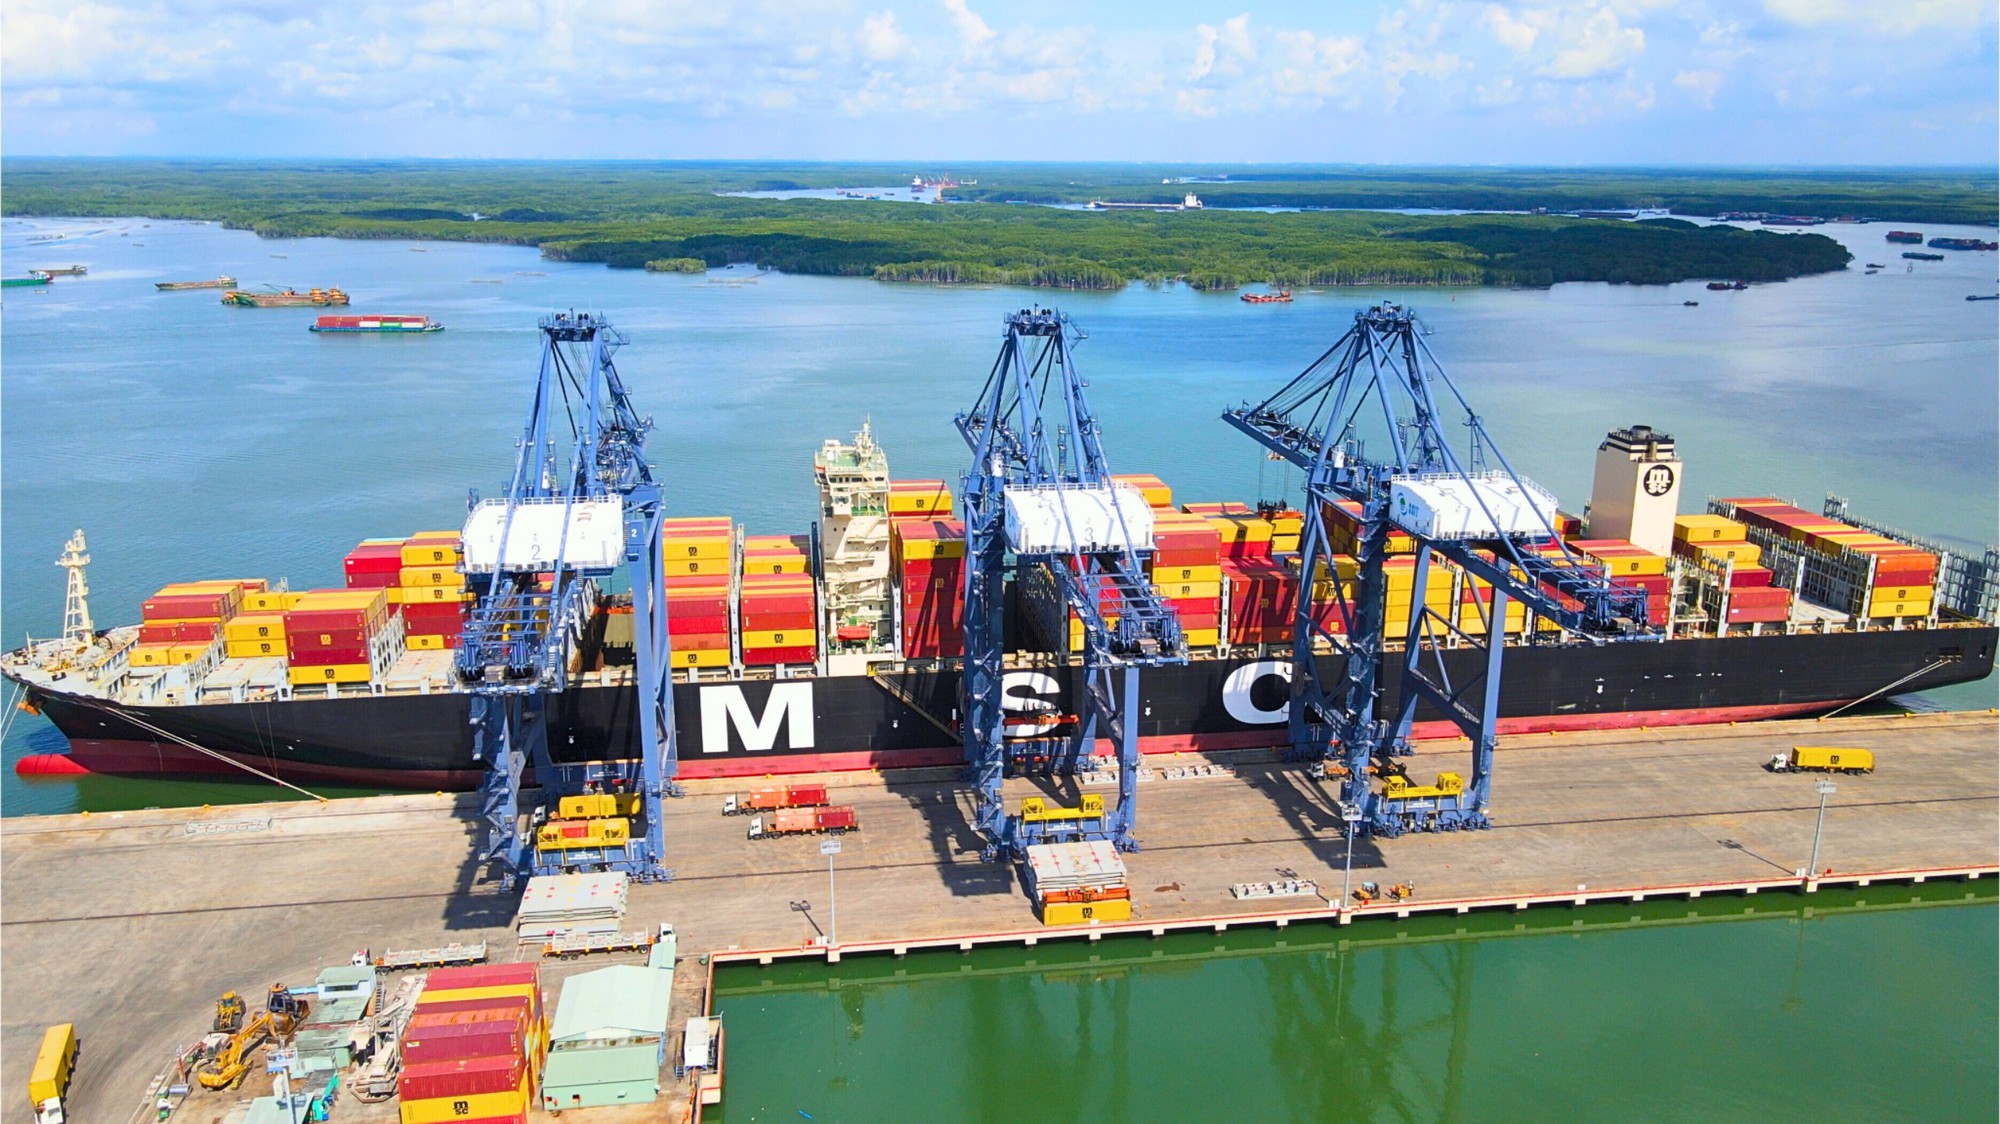 Tàu siêu lớn của hãng MSC cập cảng SSIT ở Bà Rịa - Vũng Tàu - Ảnh 5.